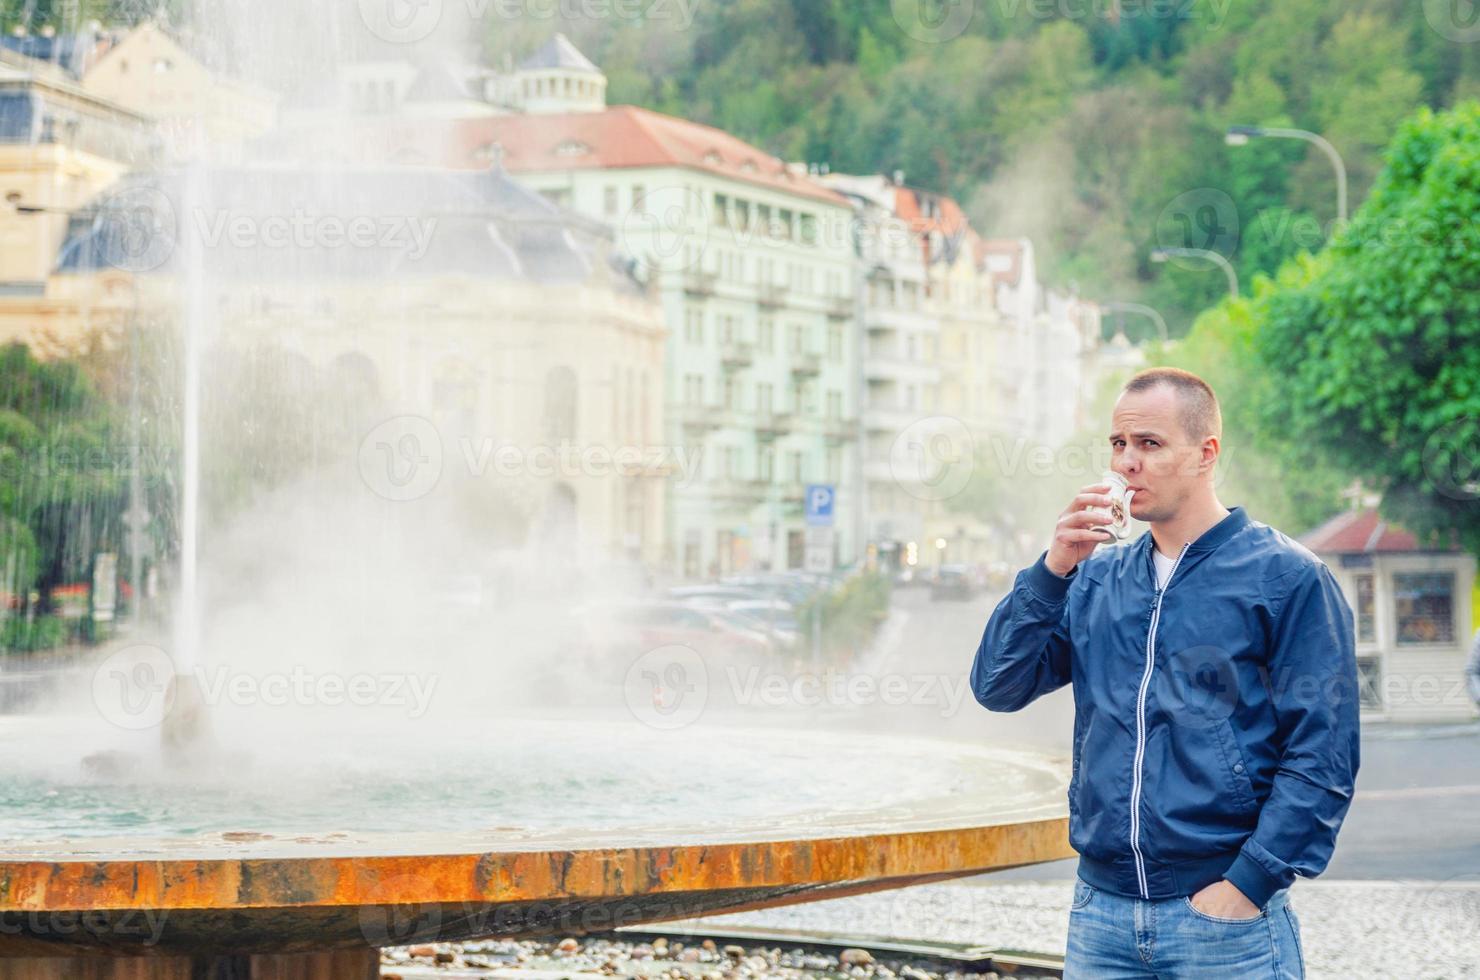 jonge man toerist met blauwe jas kijkt naar de camera en drinkt therapeutisch mineraalwater uit de beker foto